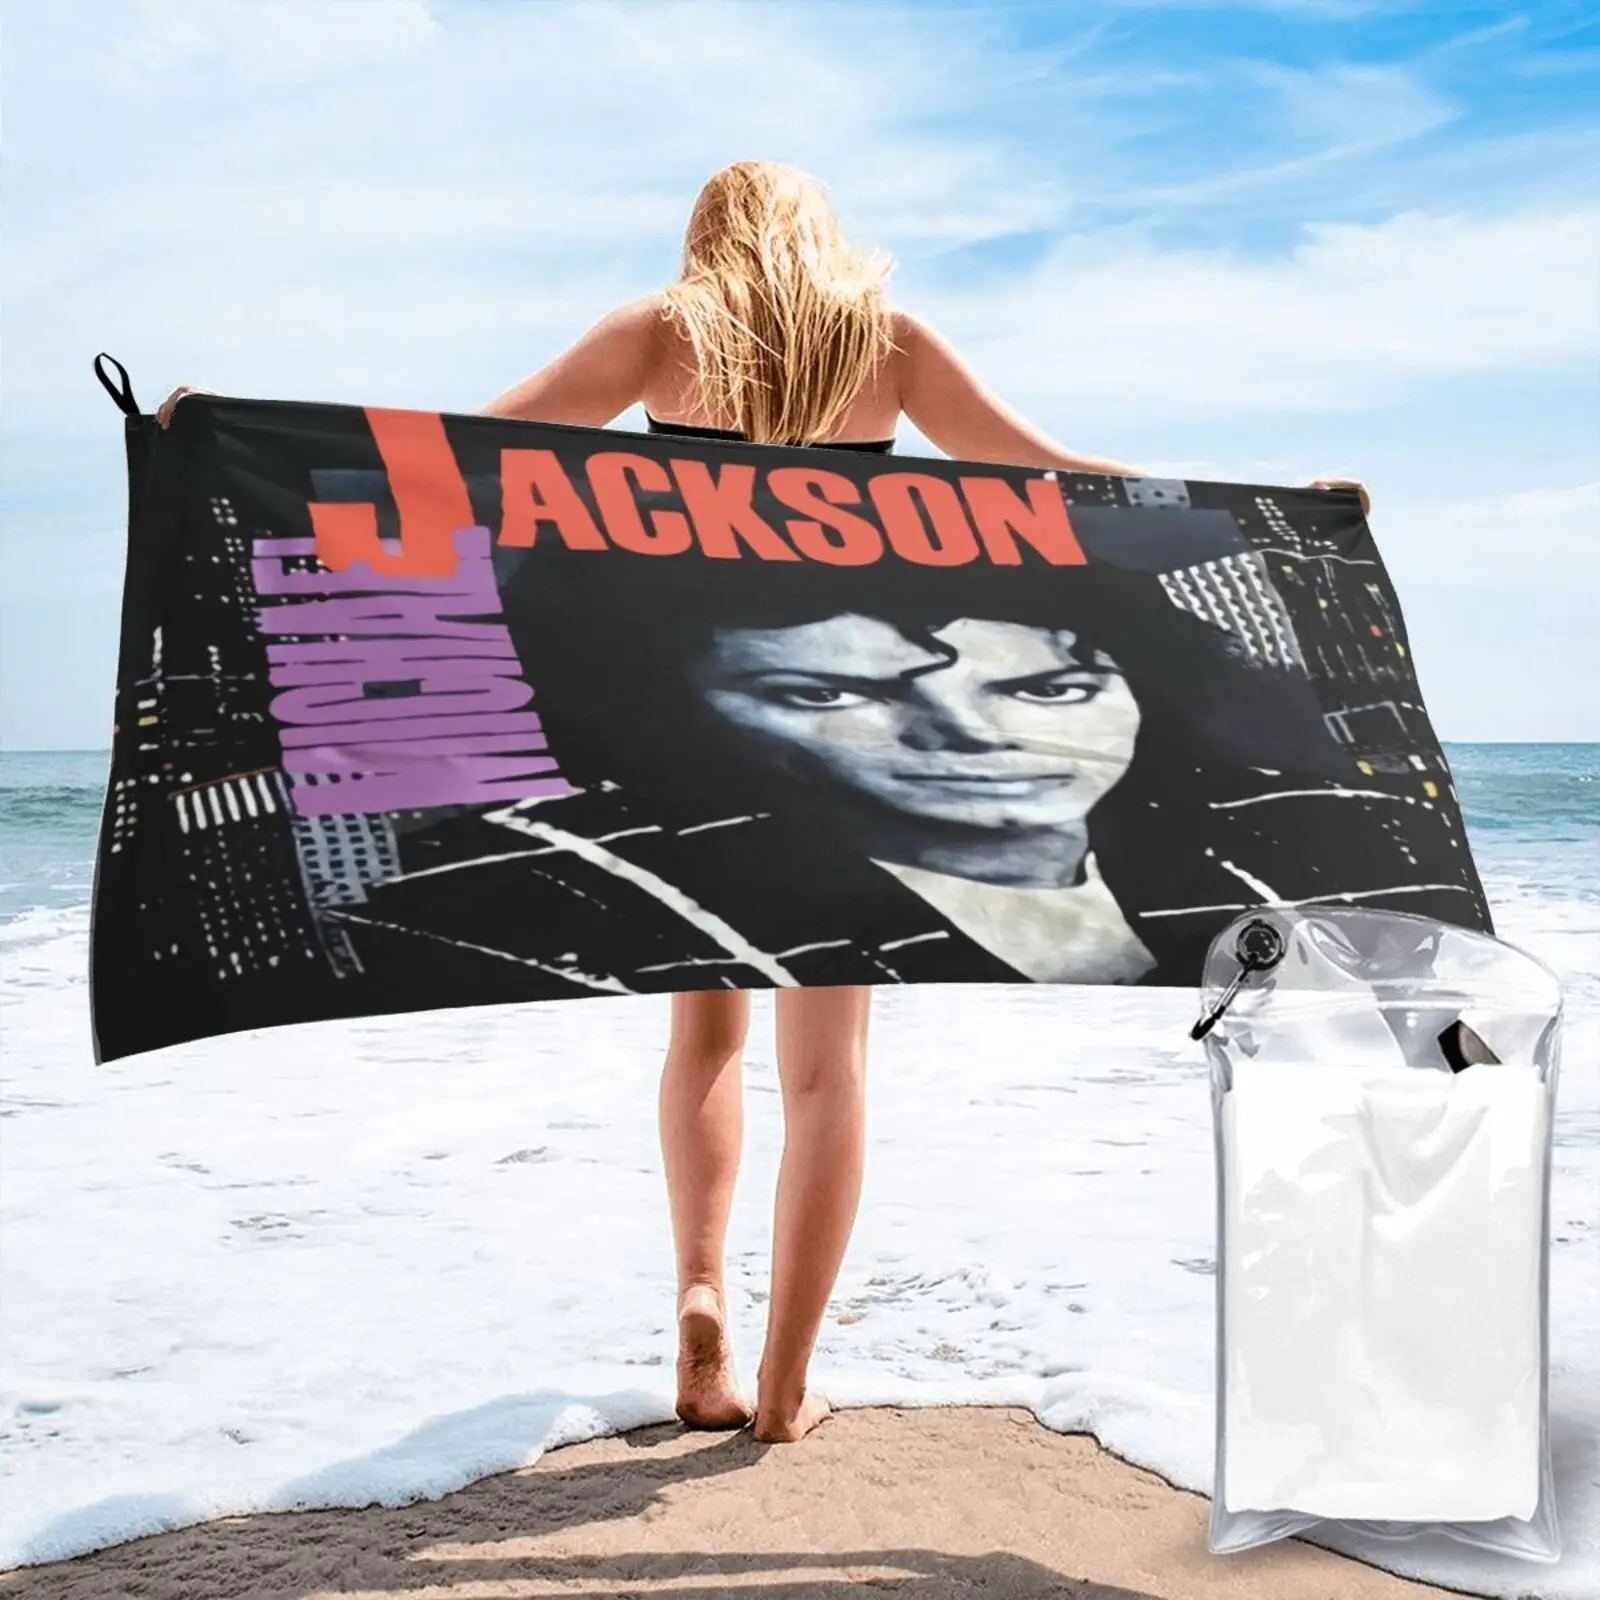 

Промо-альбом с изображением Майкла Джексона для концертов, пляжное полотенце, роскошное пляжное полотенце, пляжное полотенце для ванны, Пля...